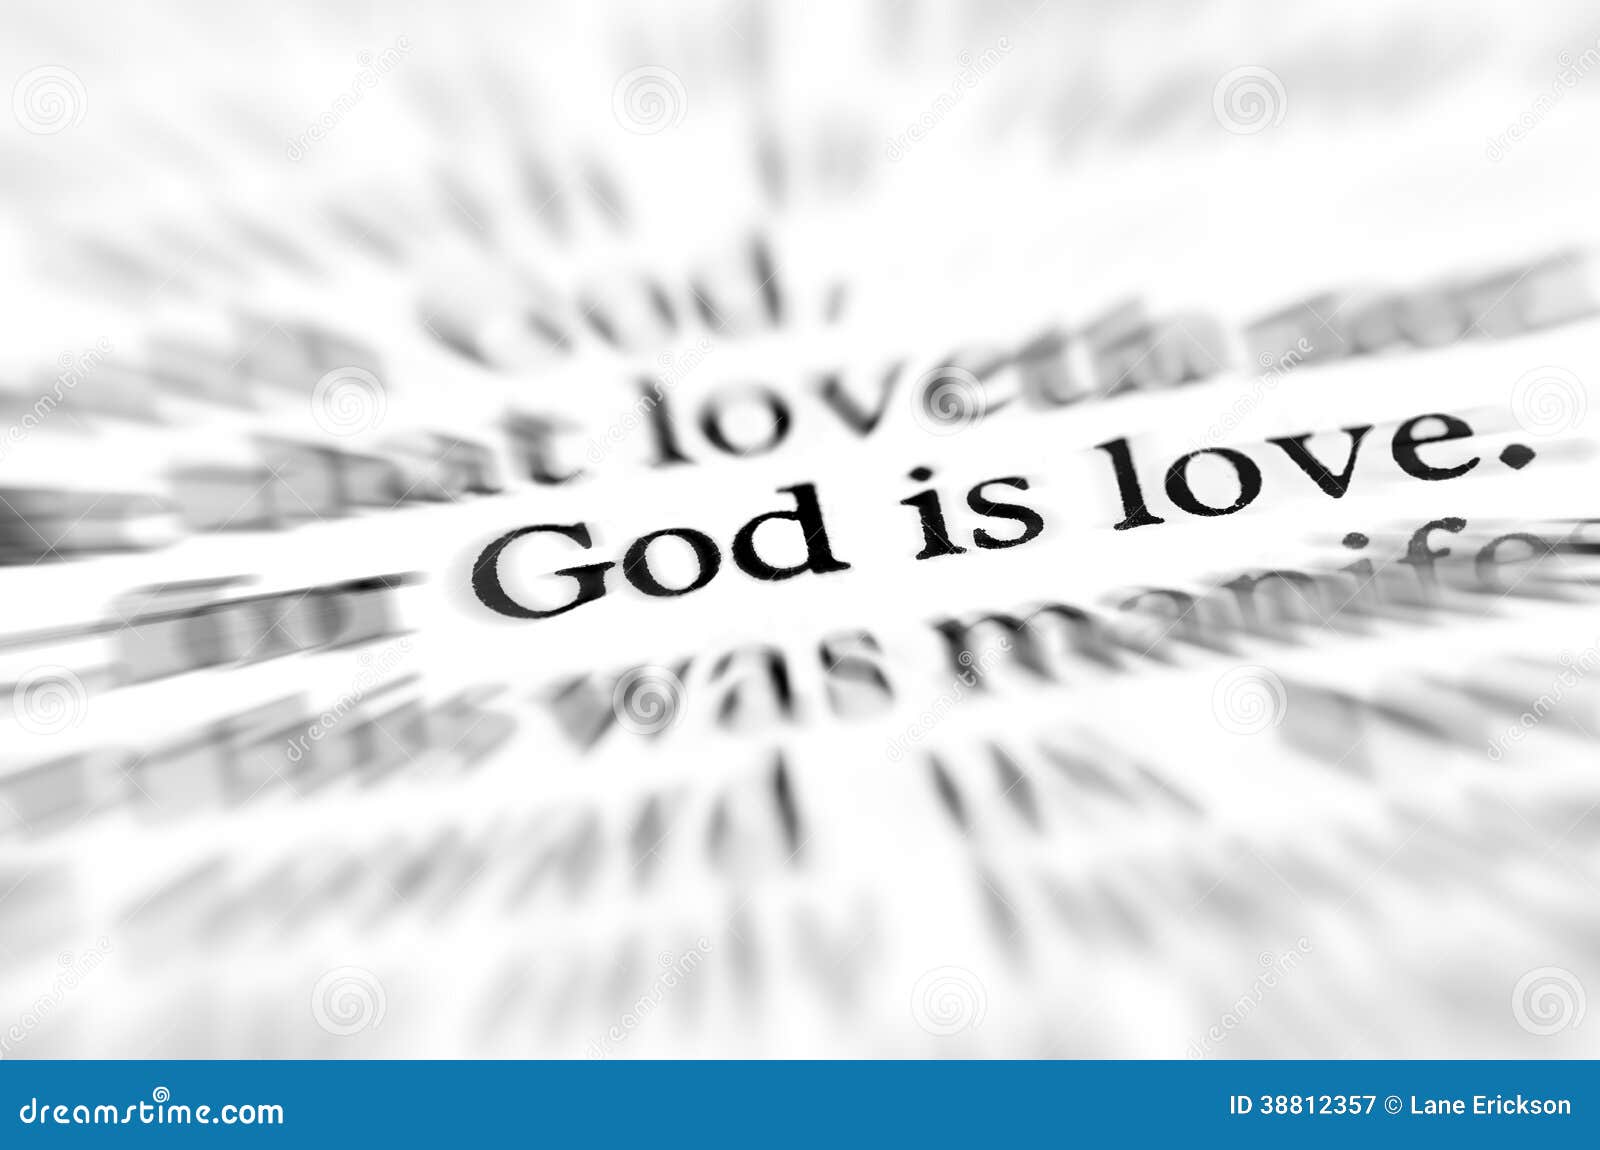 zoom god is love scripture in bible